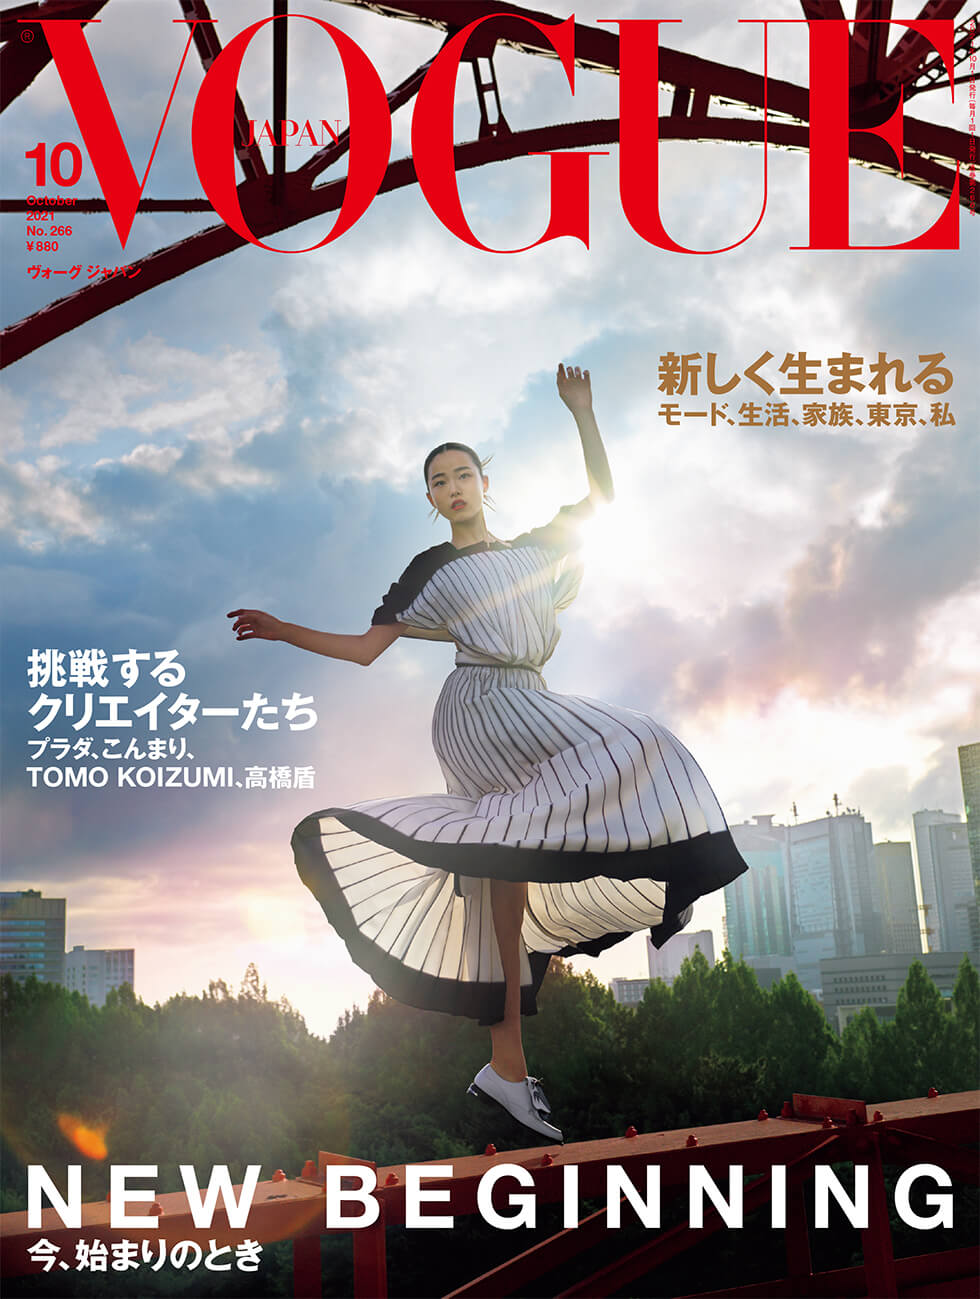 豊田遥夏 – VOGUE JAPAN「NEW BEGINNING、今、始まりのとき」2021.10月号